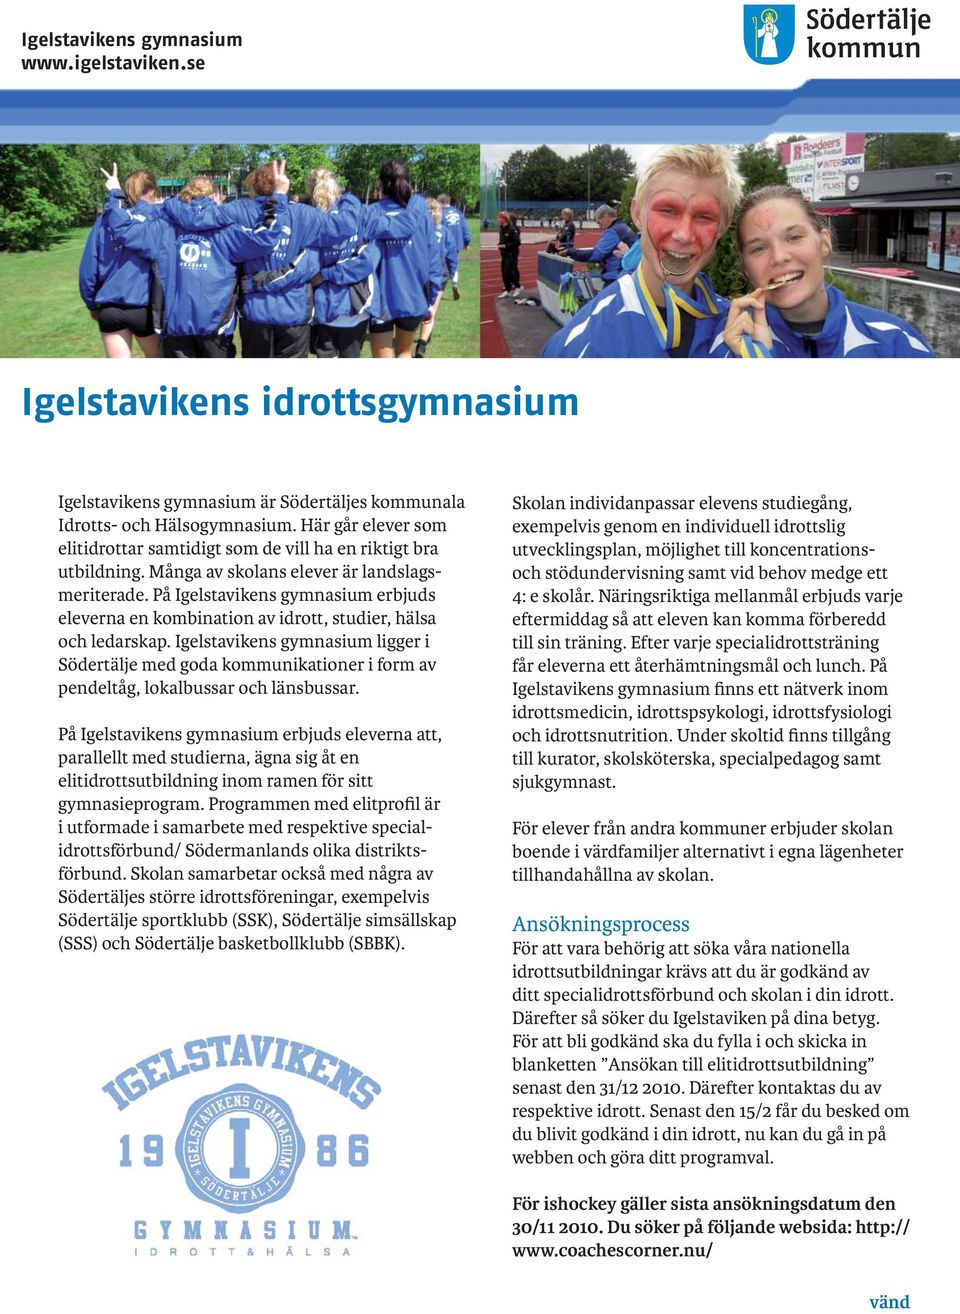 Igelstavikens gymnasium ligger i Södertälje med goda kommunikationer i form av pendeltåg, lokalbussar och länsbussar.